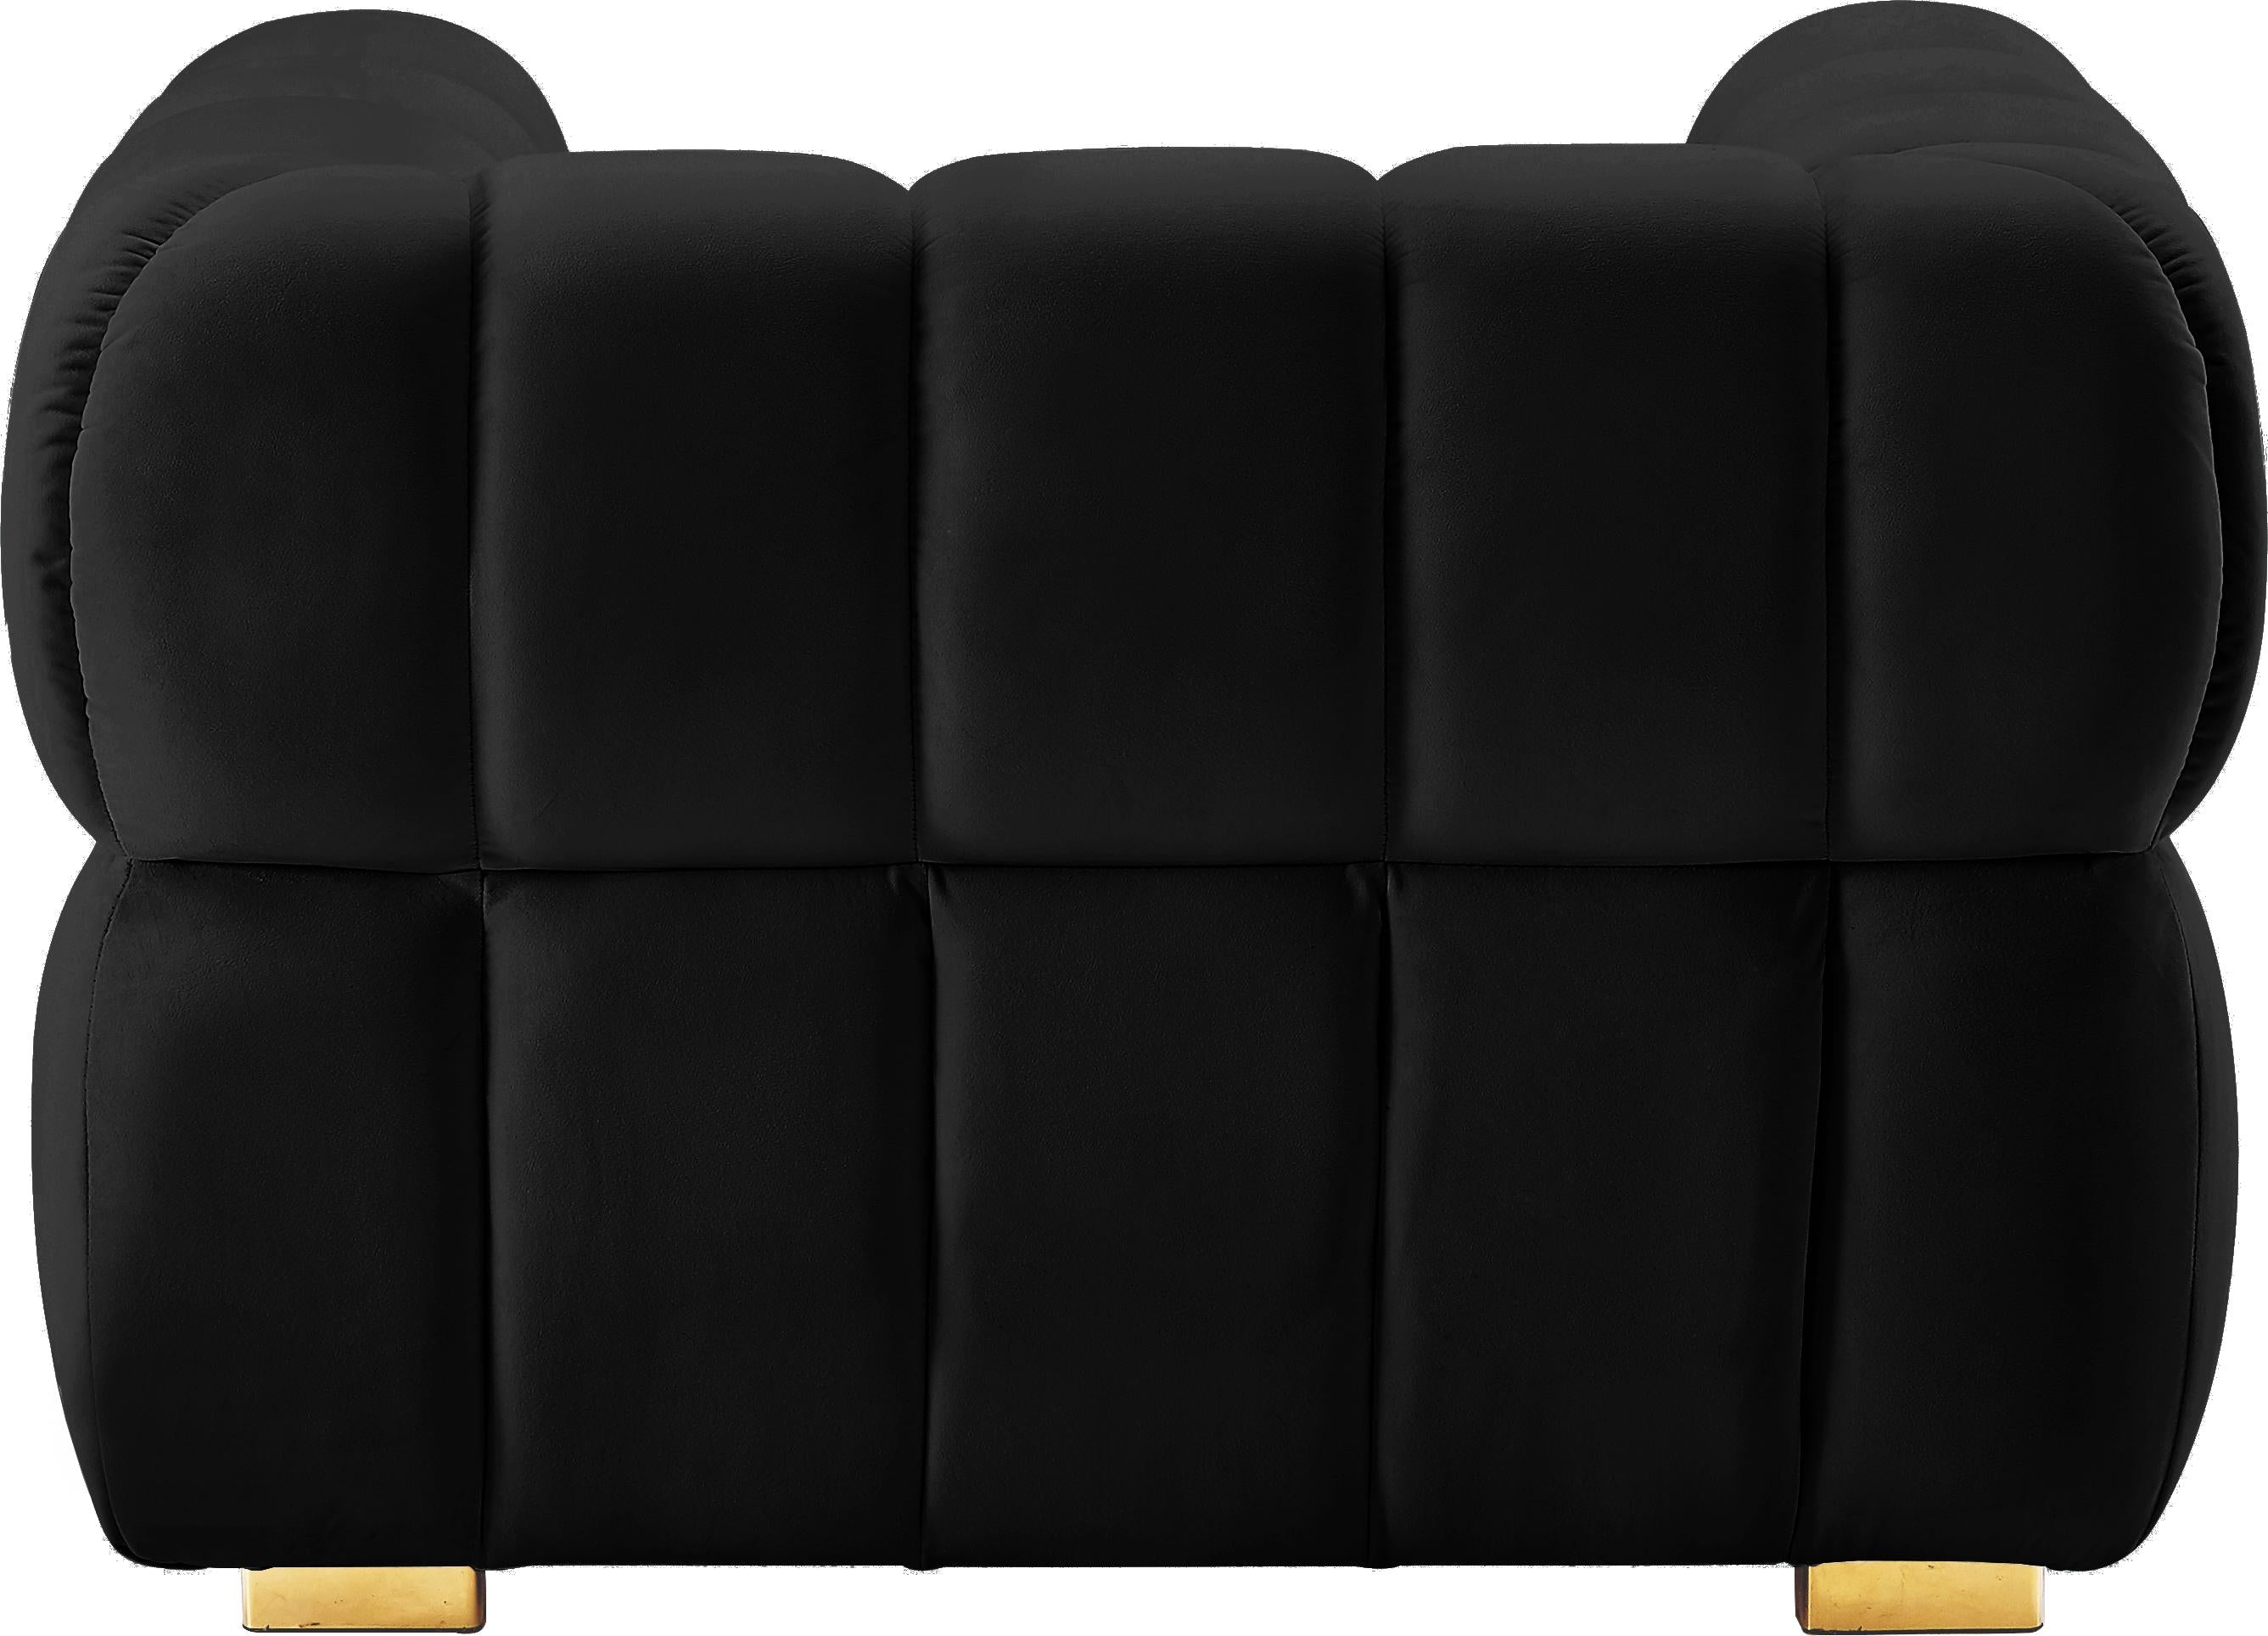 Gwen Black Velvet Chair - Luxury Home Furniture (MI)